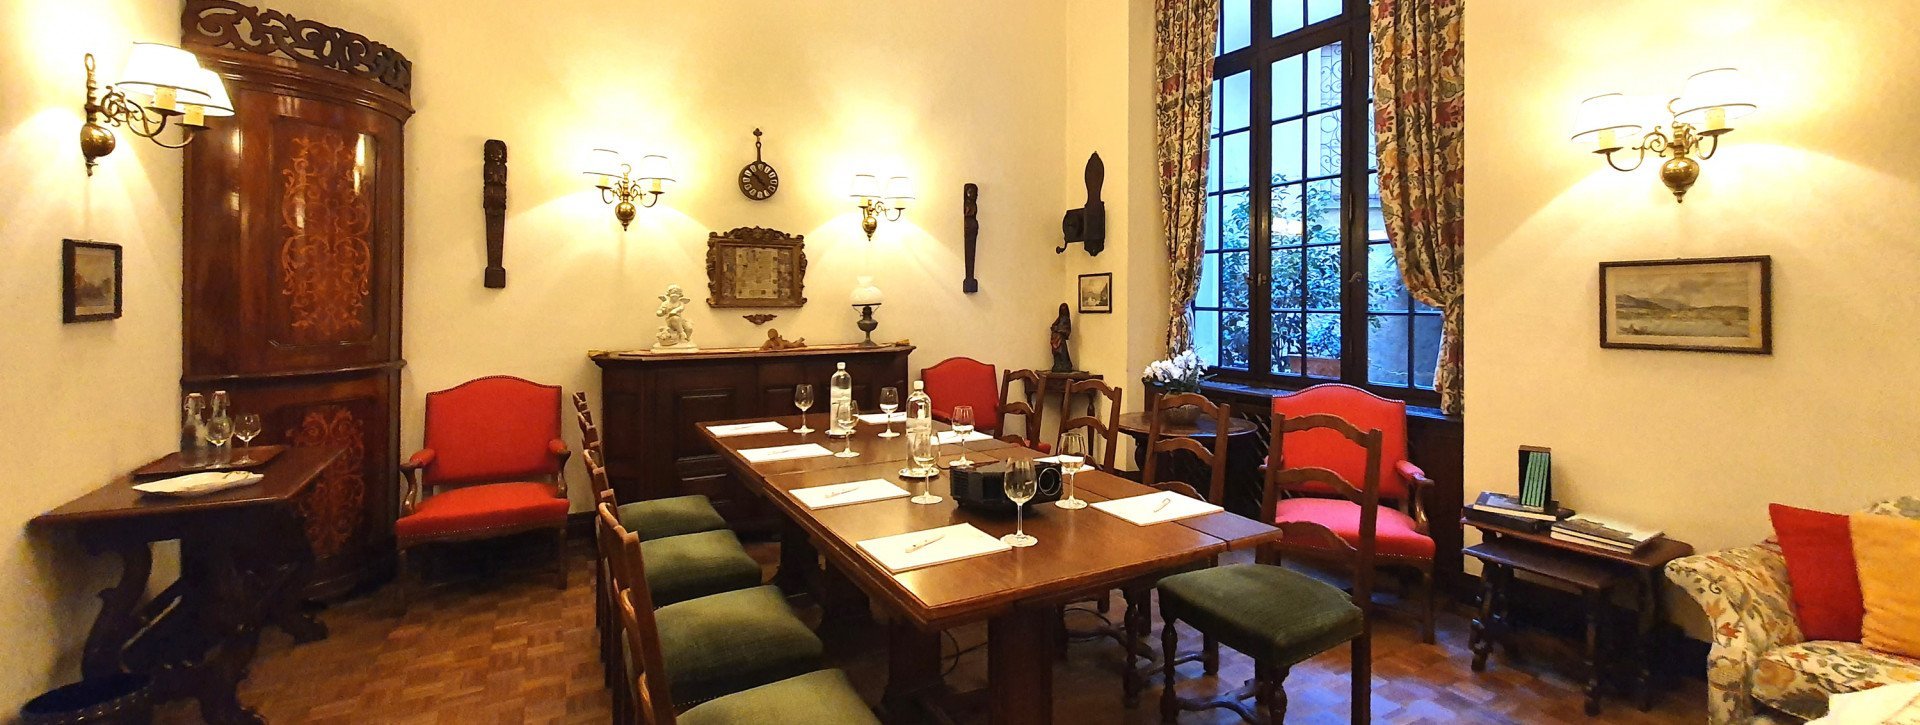 Salle de réunion "Taverna degli Angeli" pour des événements jusqu'à 8 personnes dans un style élégant et traditionnel au centre de Lugano